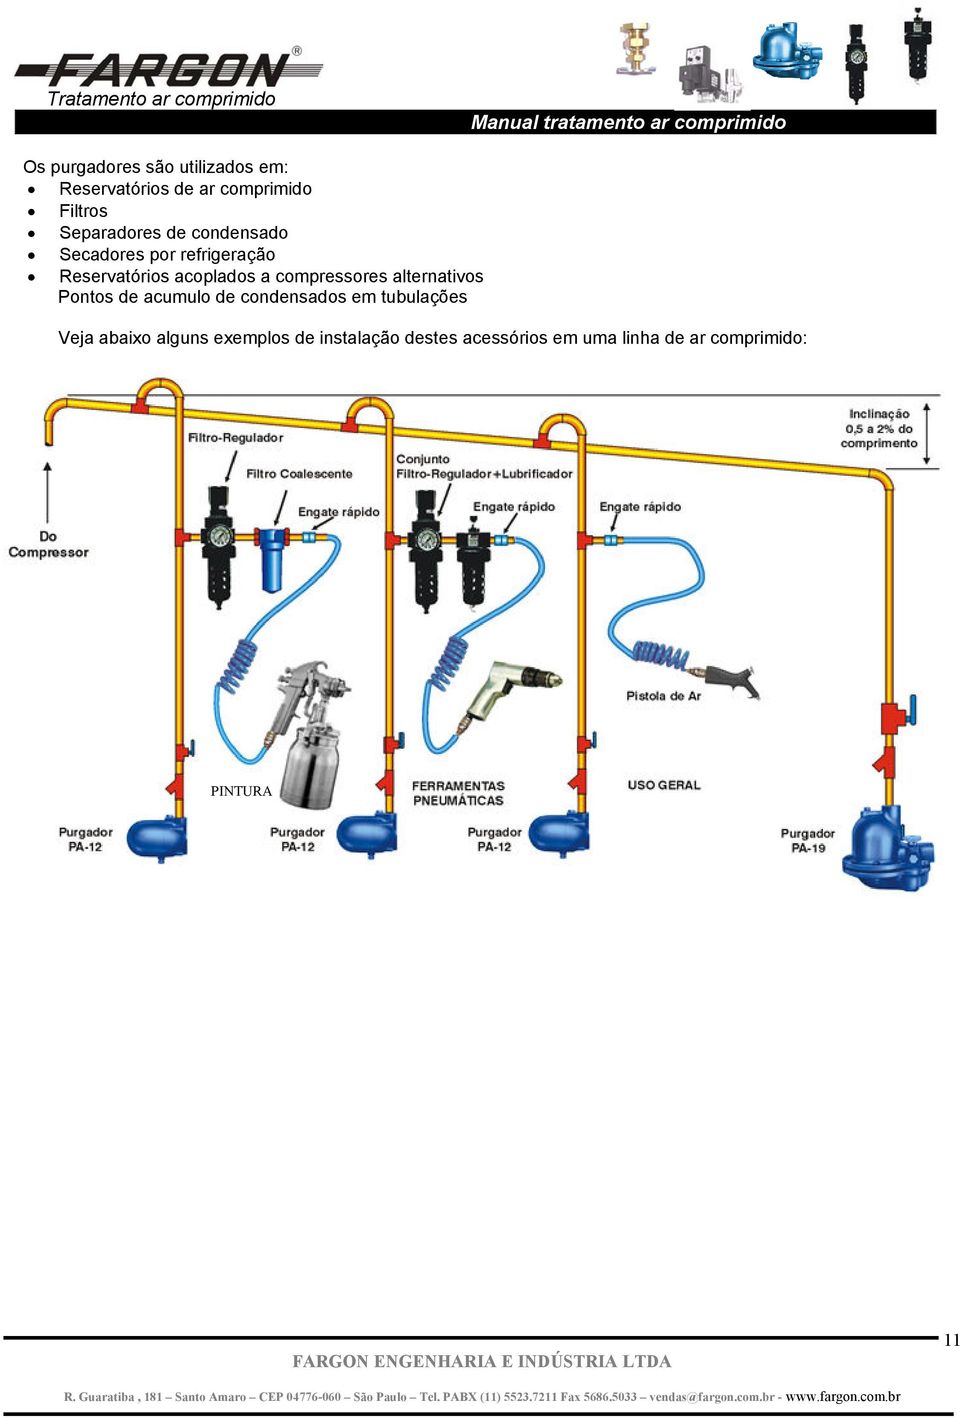 compressores alternativos Pontos de acumulo de condensados em tubulações Veja